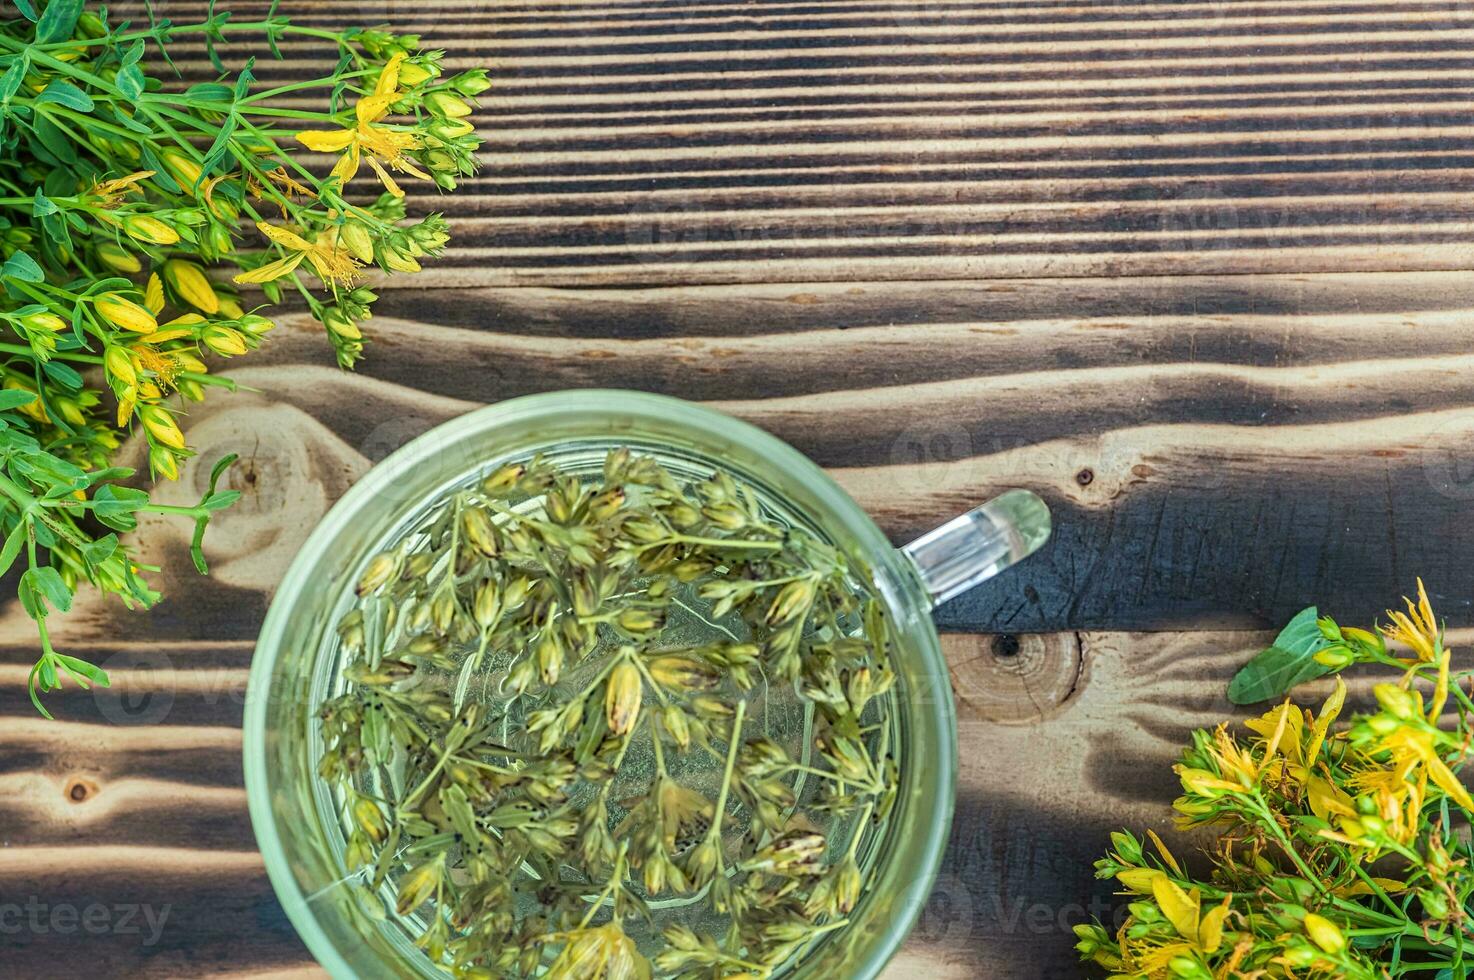 hypericum - st johns mosto plantas amarelo flor usava dentro alternativo remédio. ervas chá dentro transparente copo. útil homeopático elexir em de madeira mesa foto